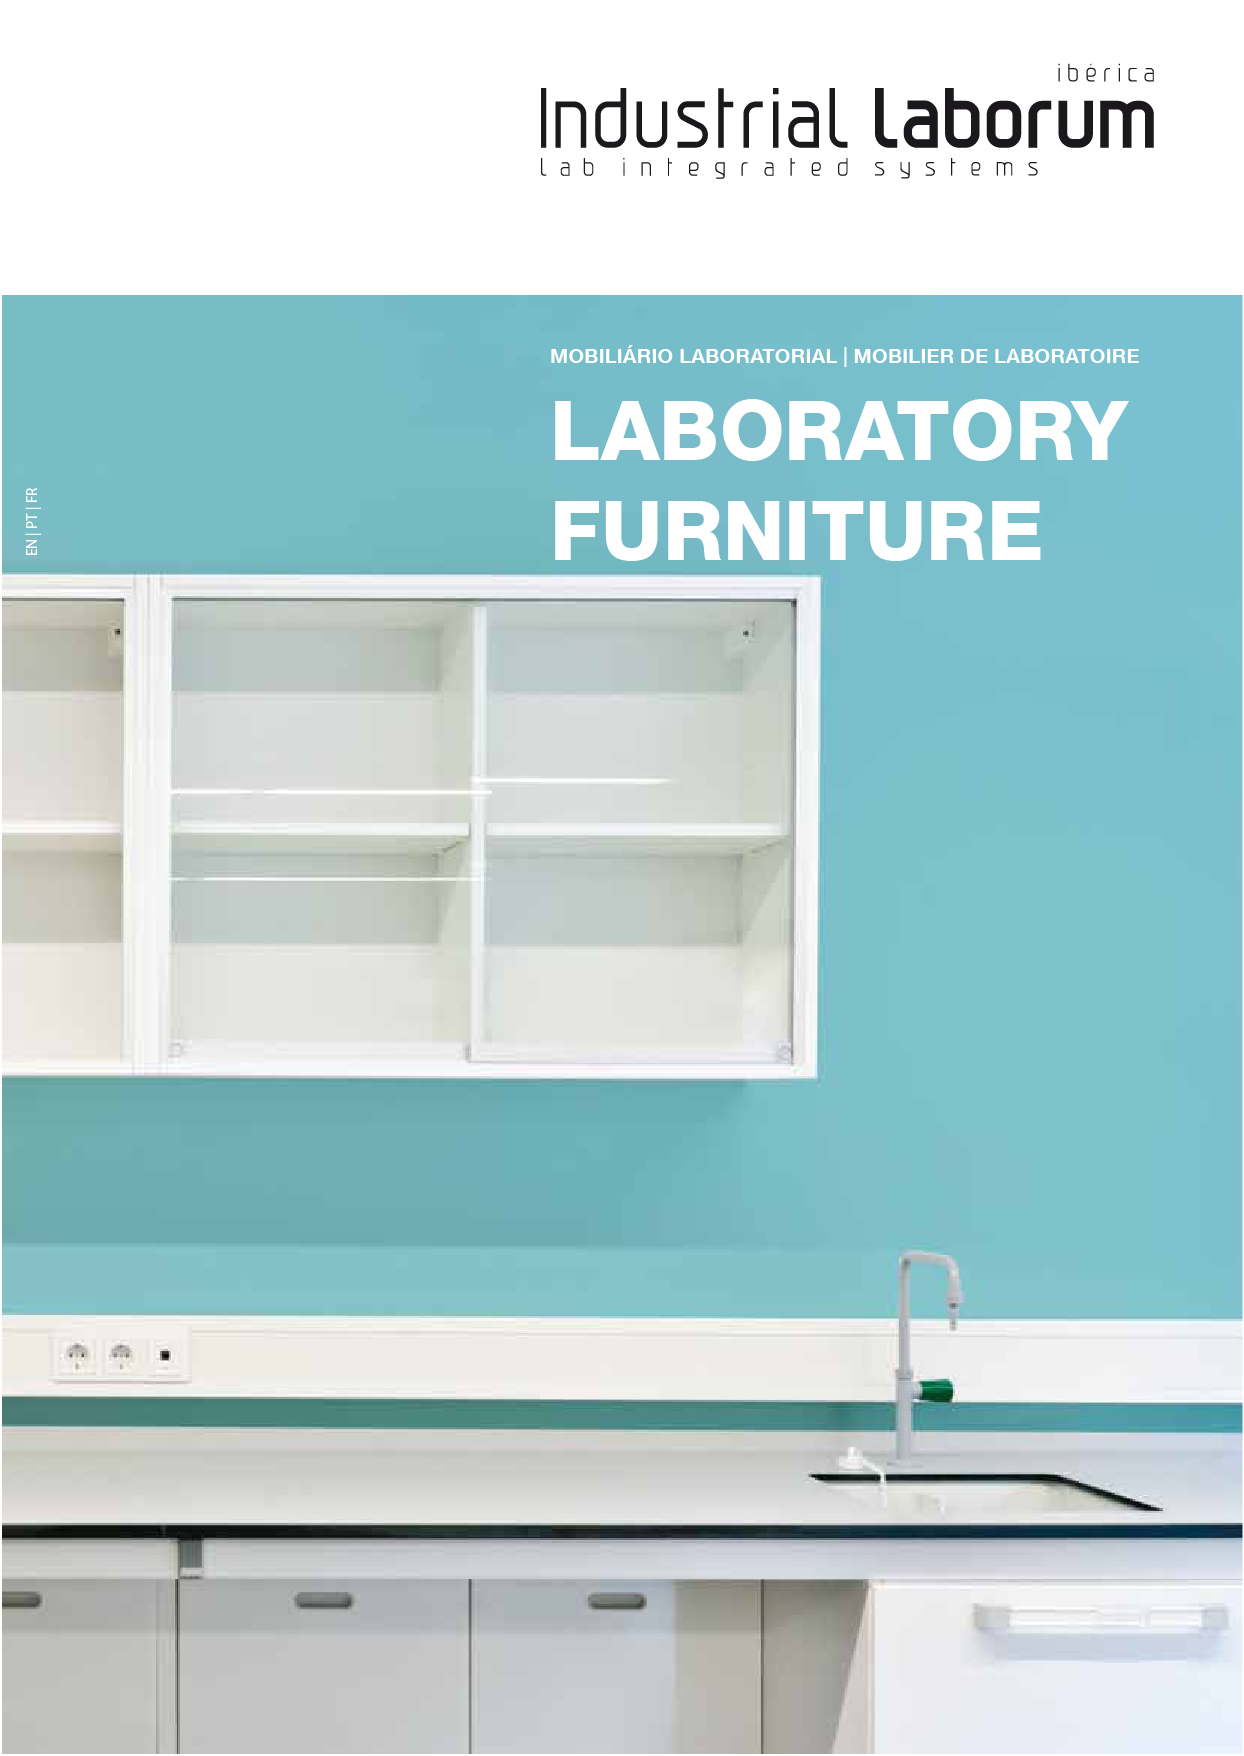 Catálogo de mobiliário de laboratório Industrial Laborum Ibérica